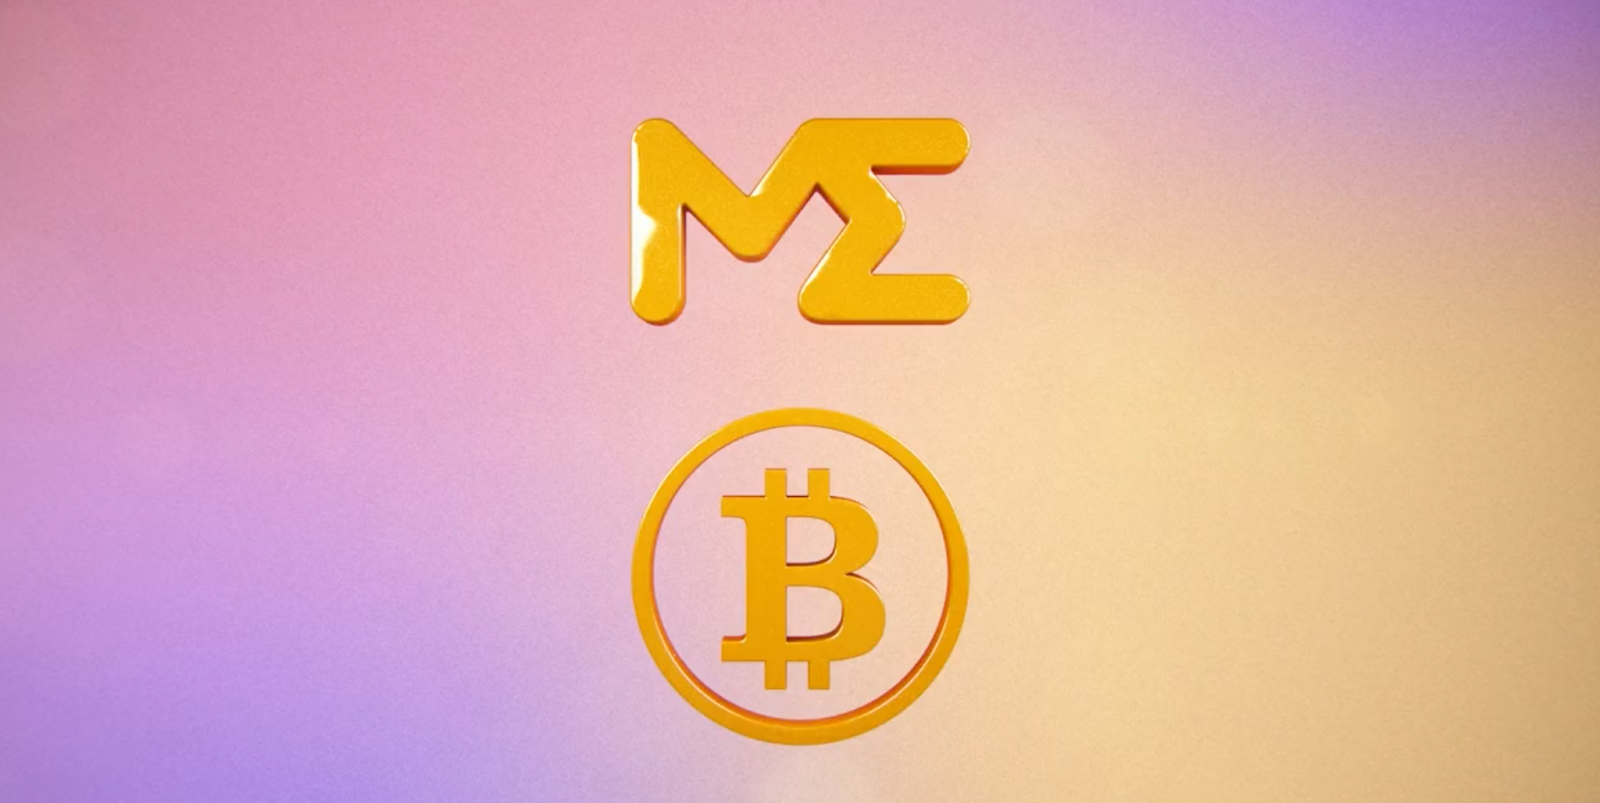 マジックエデン、ビットコインのロゴ